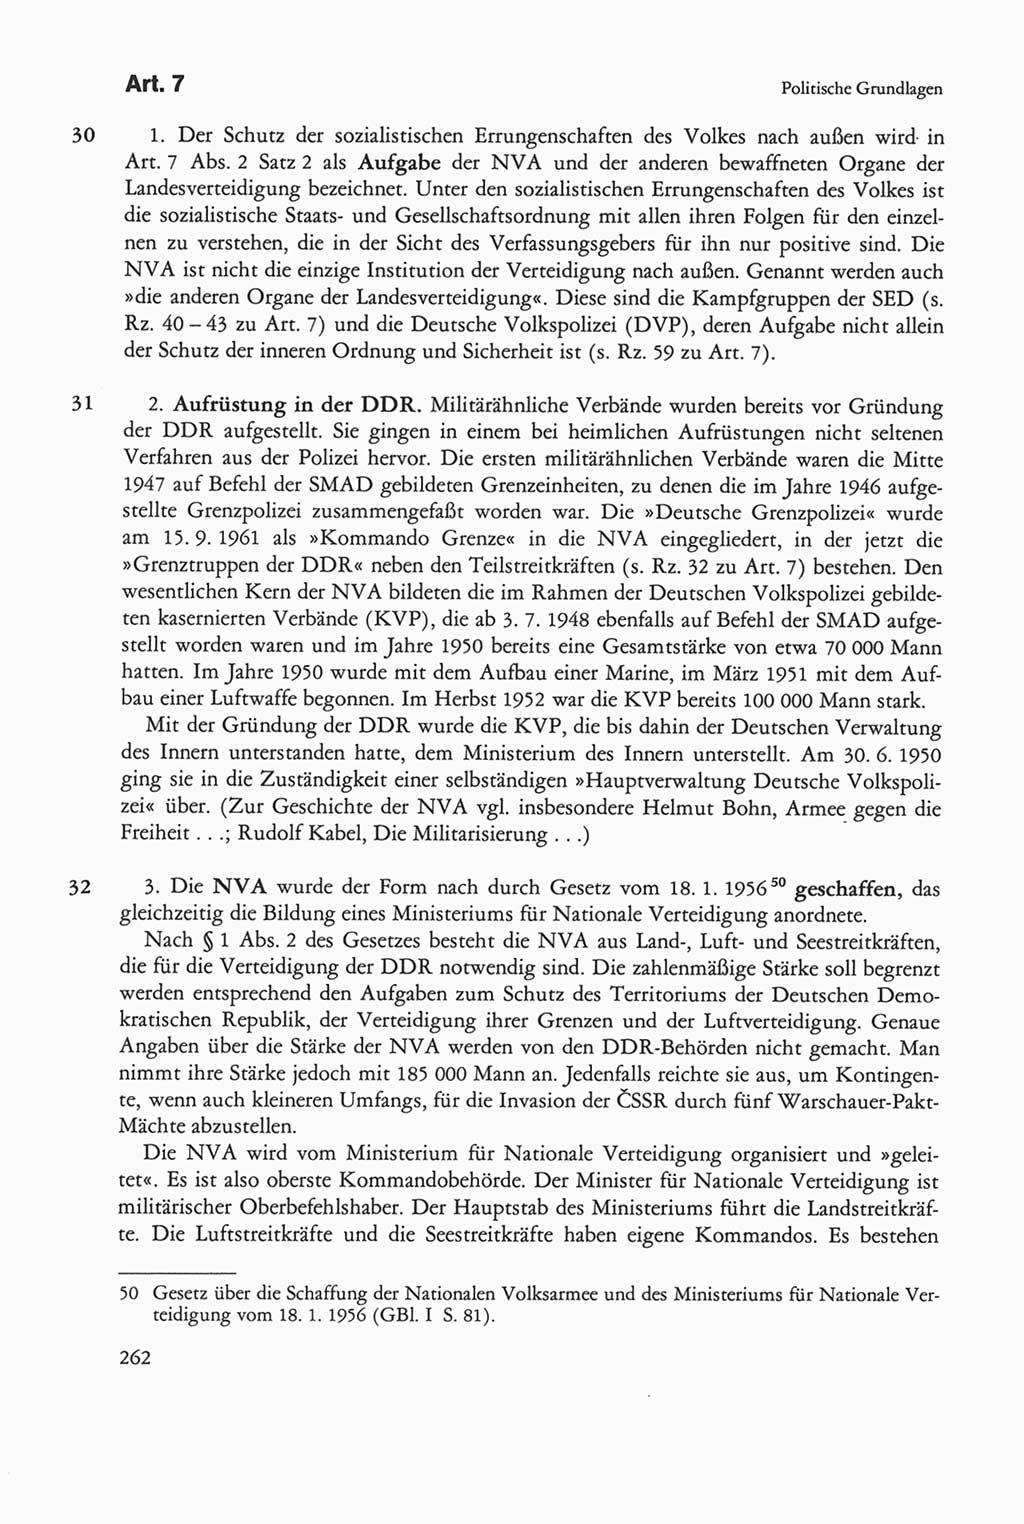 Die sozialistische Verfassung der Deutschen Demokratischen Republik (DDR), Kommentar 1982, Seite 262 (Soz. Verf. DDR Komm. 1982, S. 262)